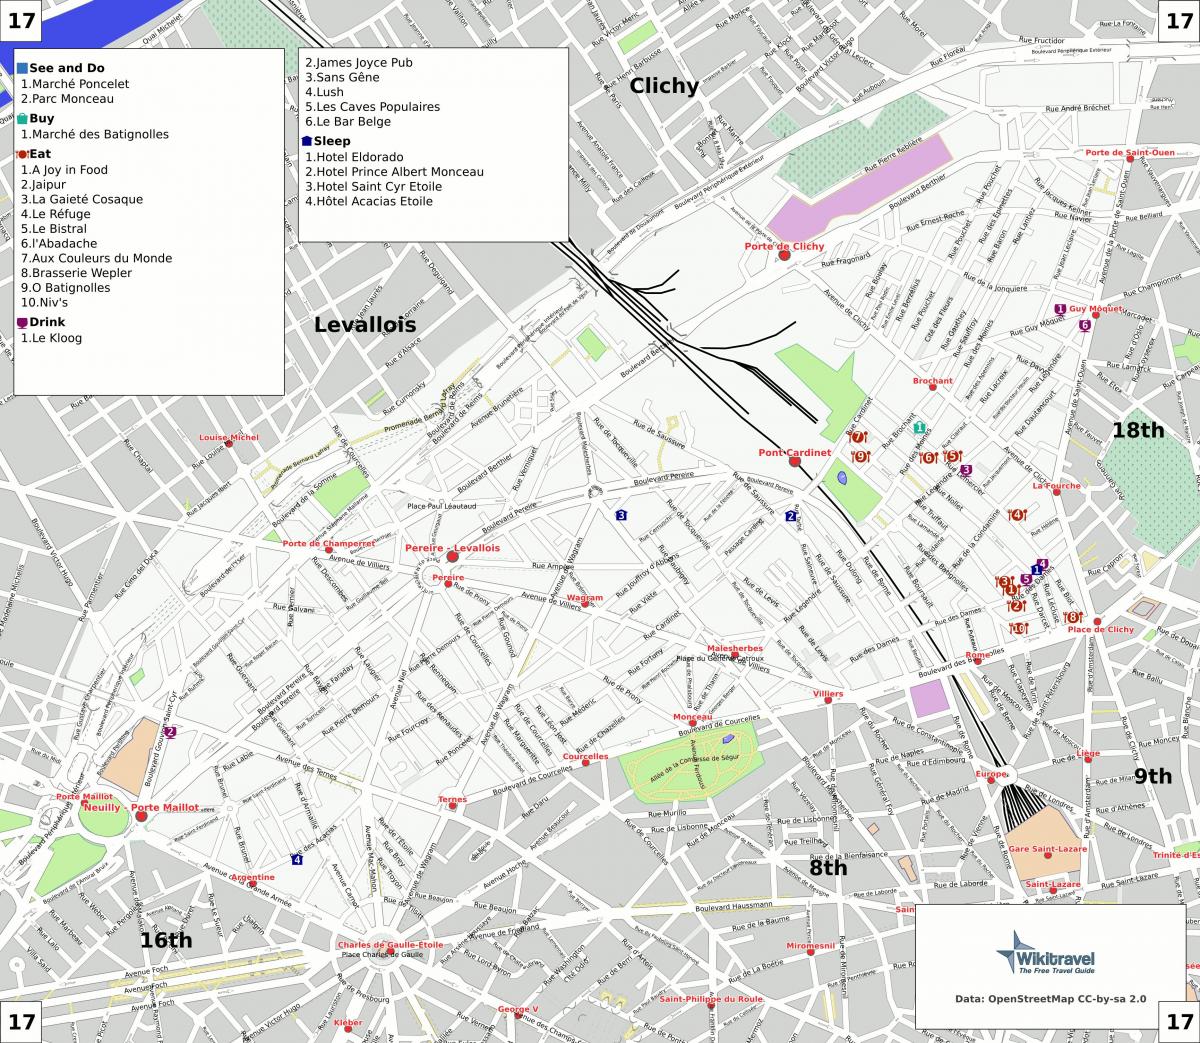 Mapa ng ika-17 arrondissement ng Paris